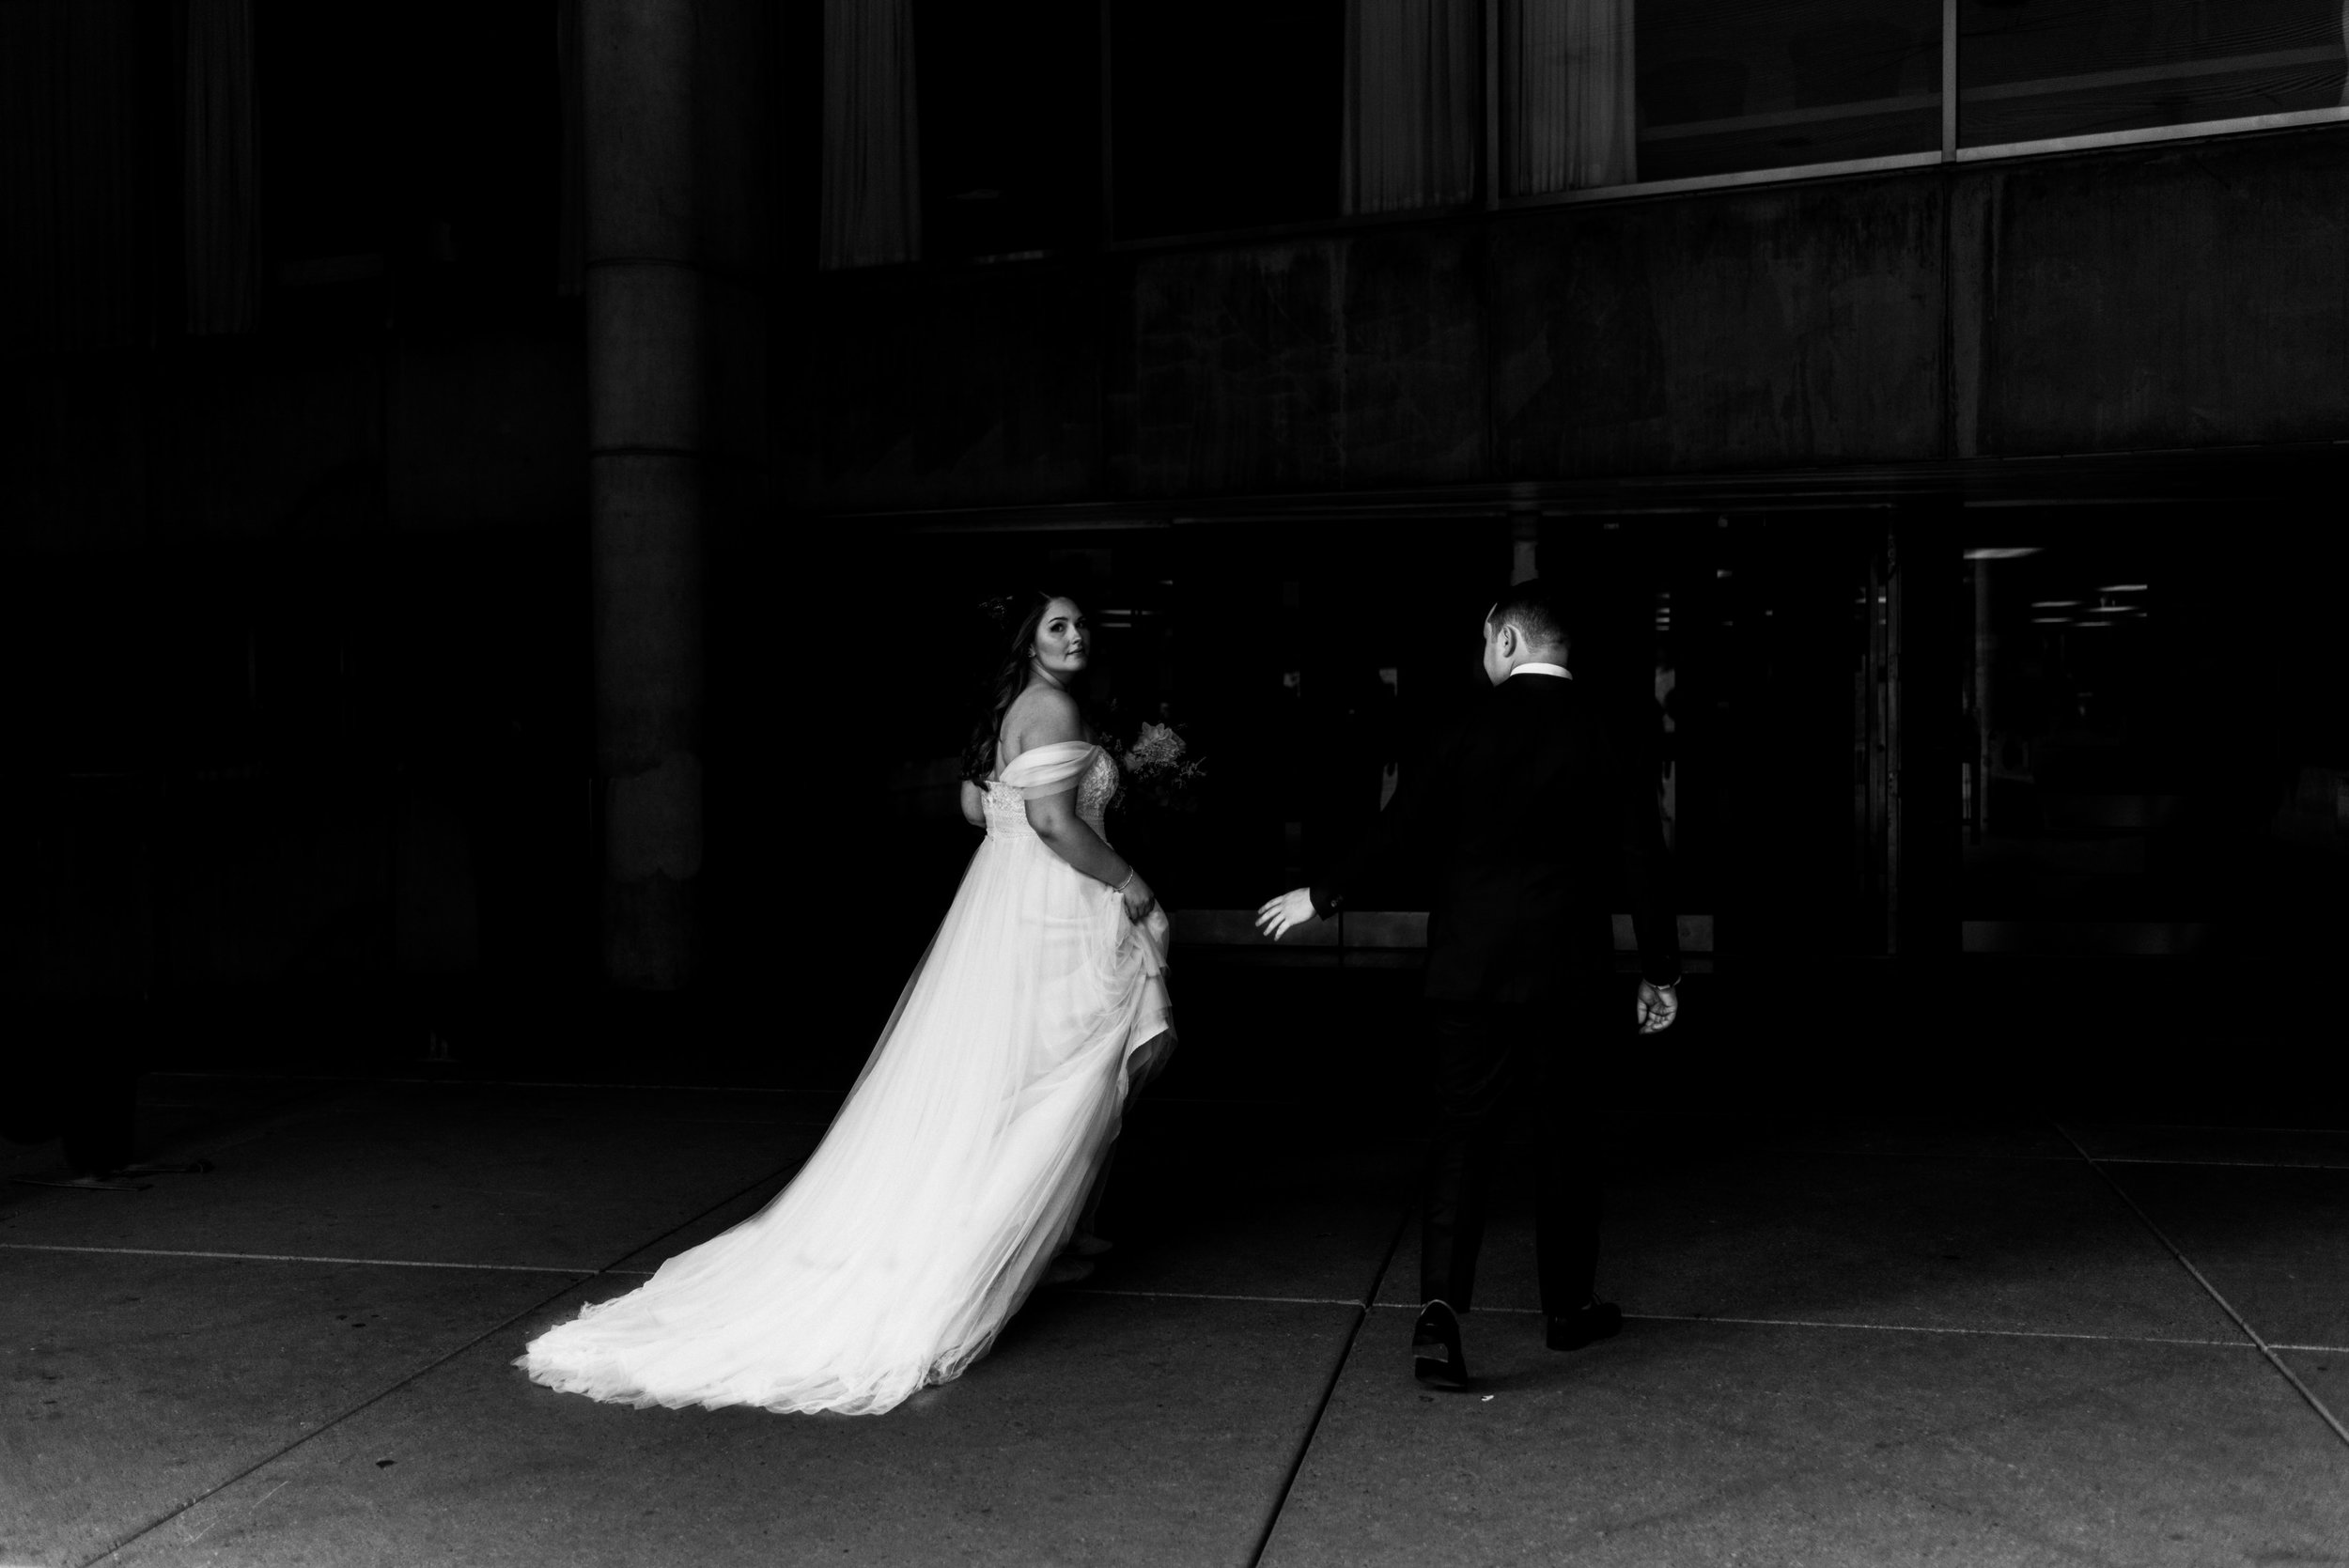 City Hall Downtown Toronto Wedding Photographer